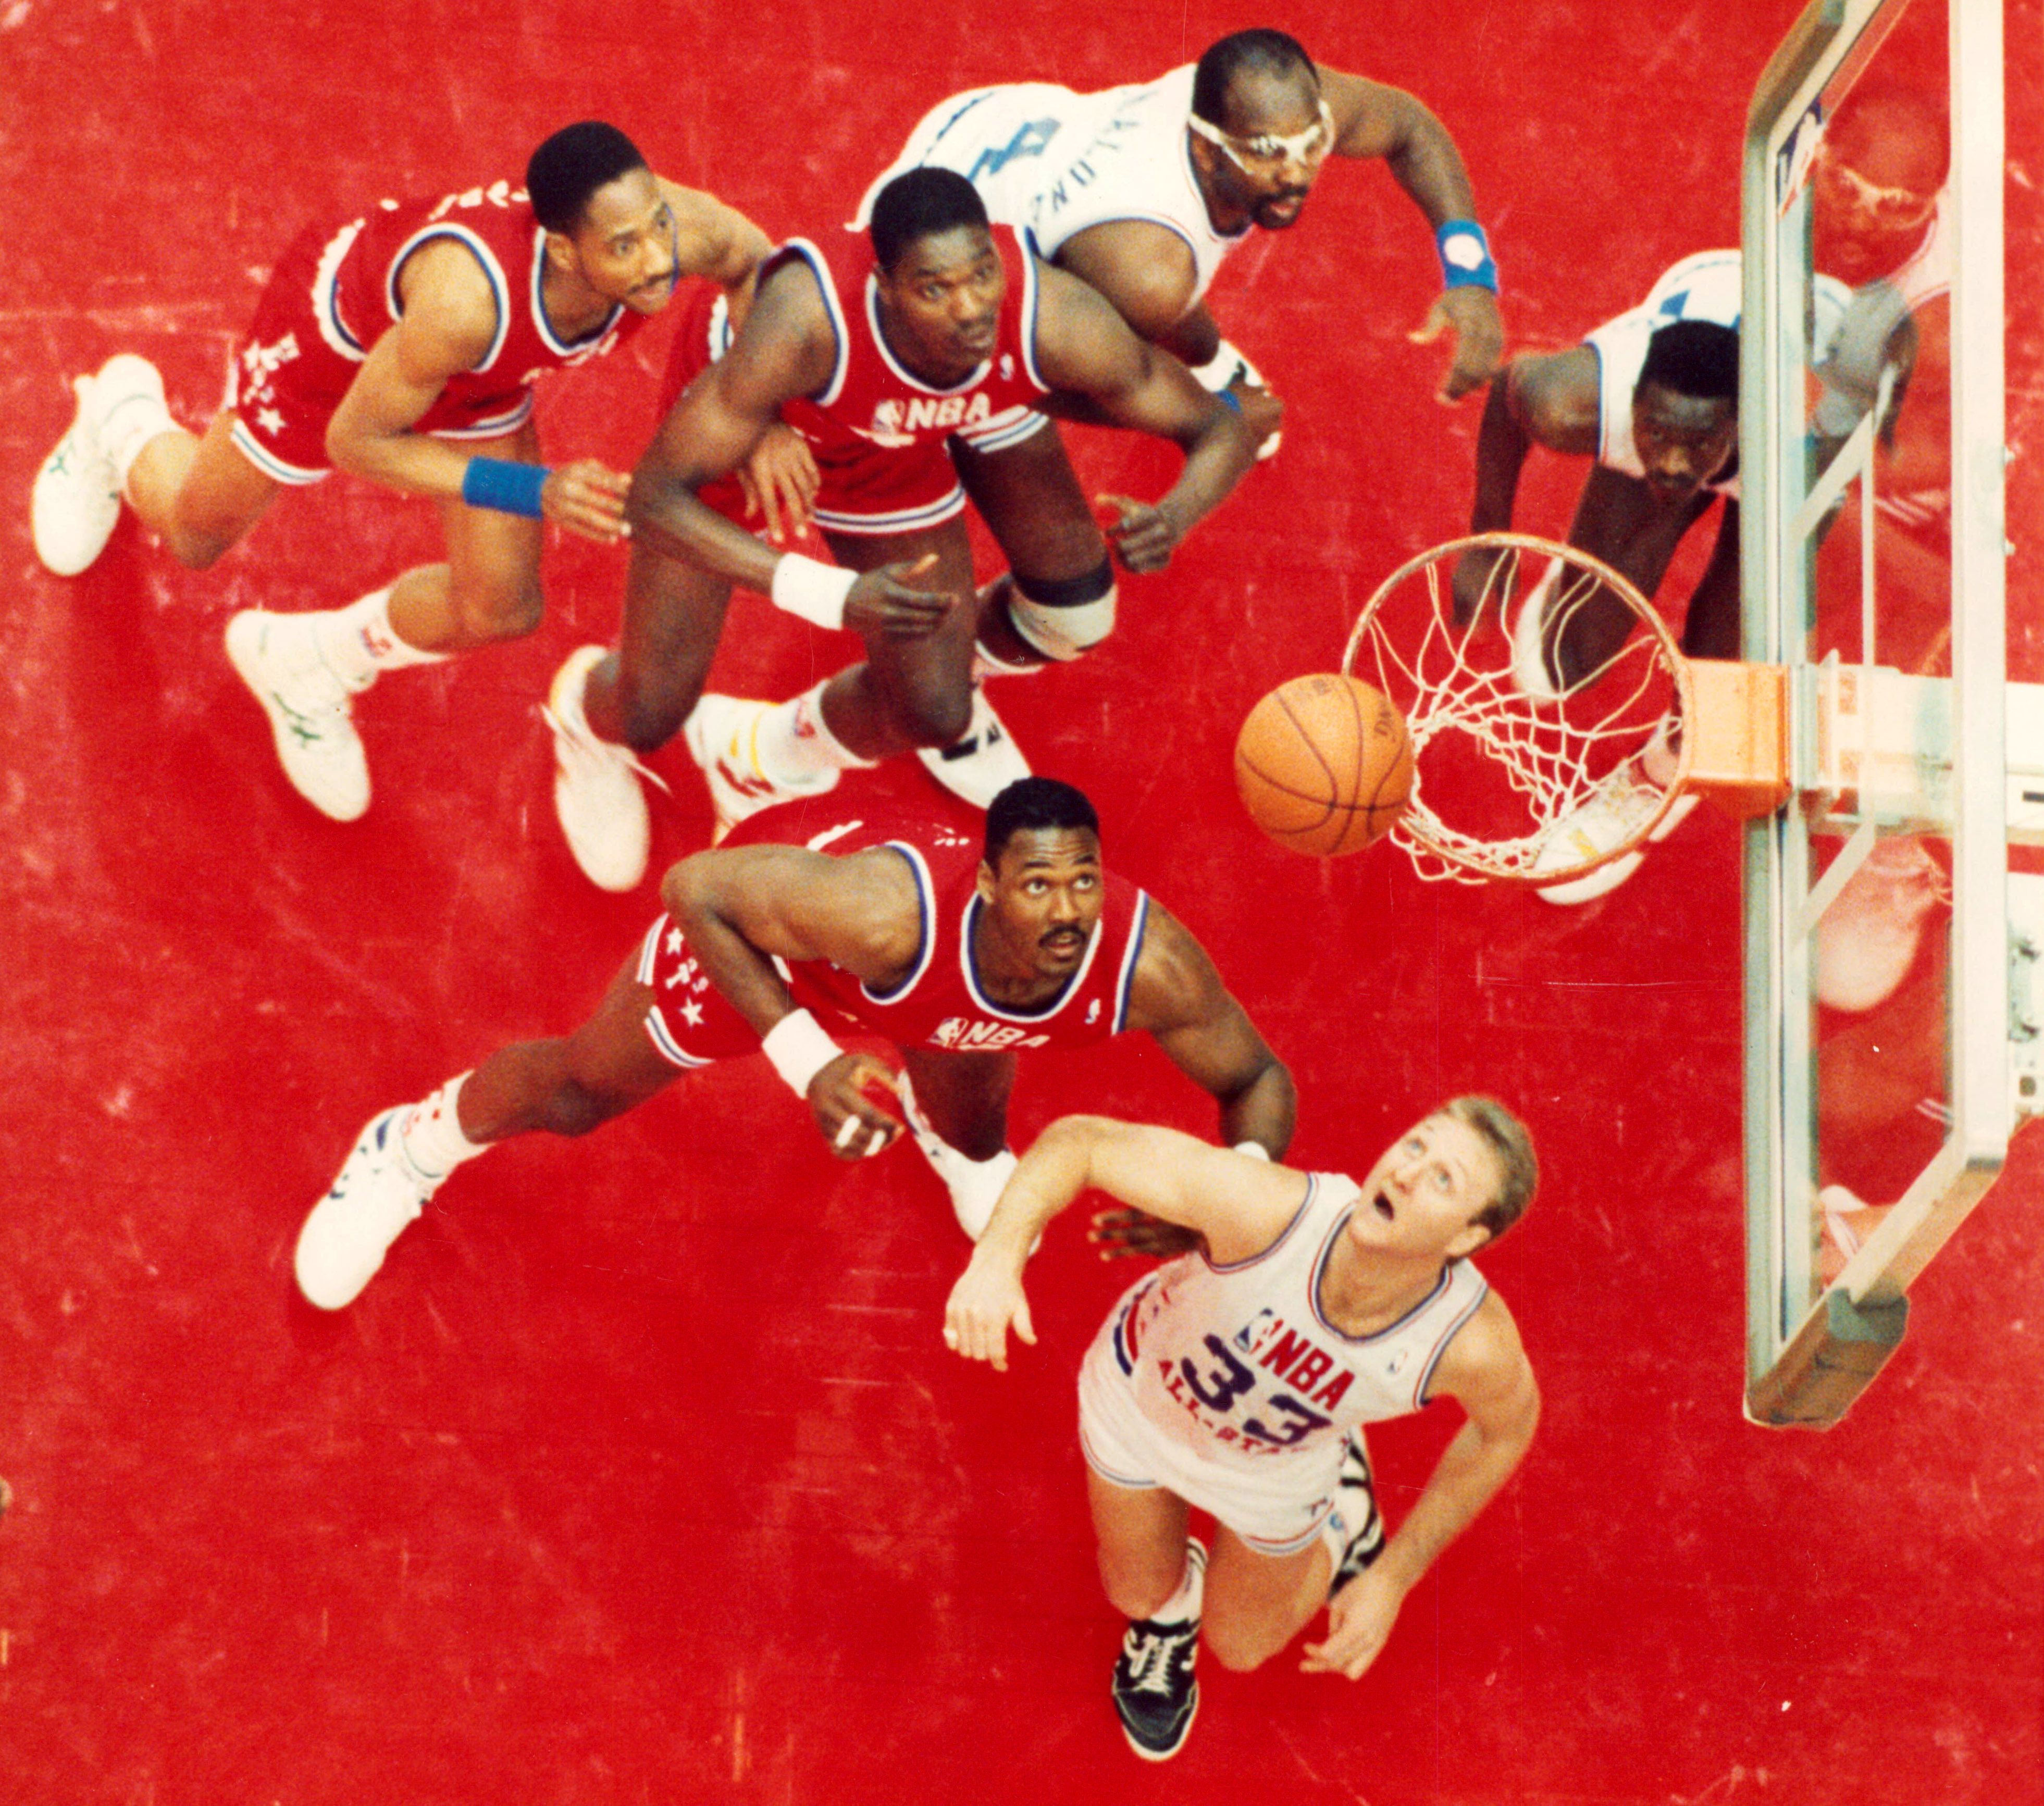 1988 NBA Slam Dunk Contest - Michael Jordan vs. Dominique Wilkins 